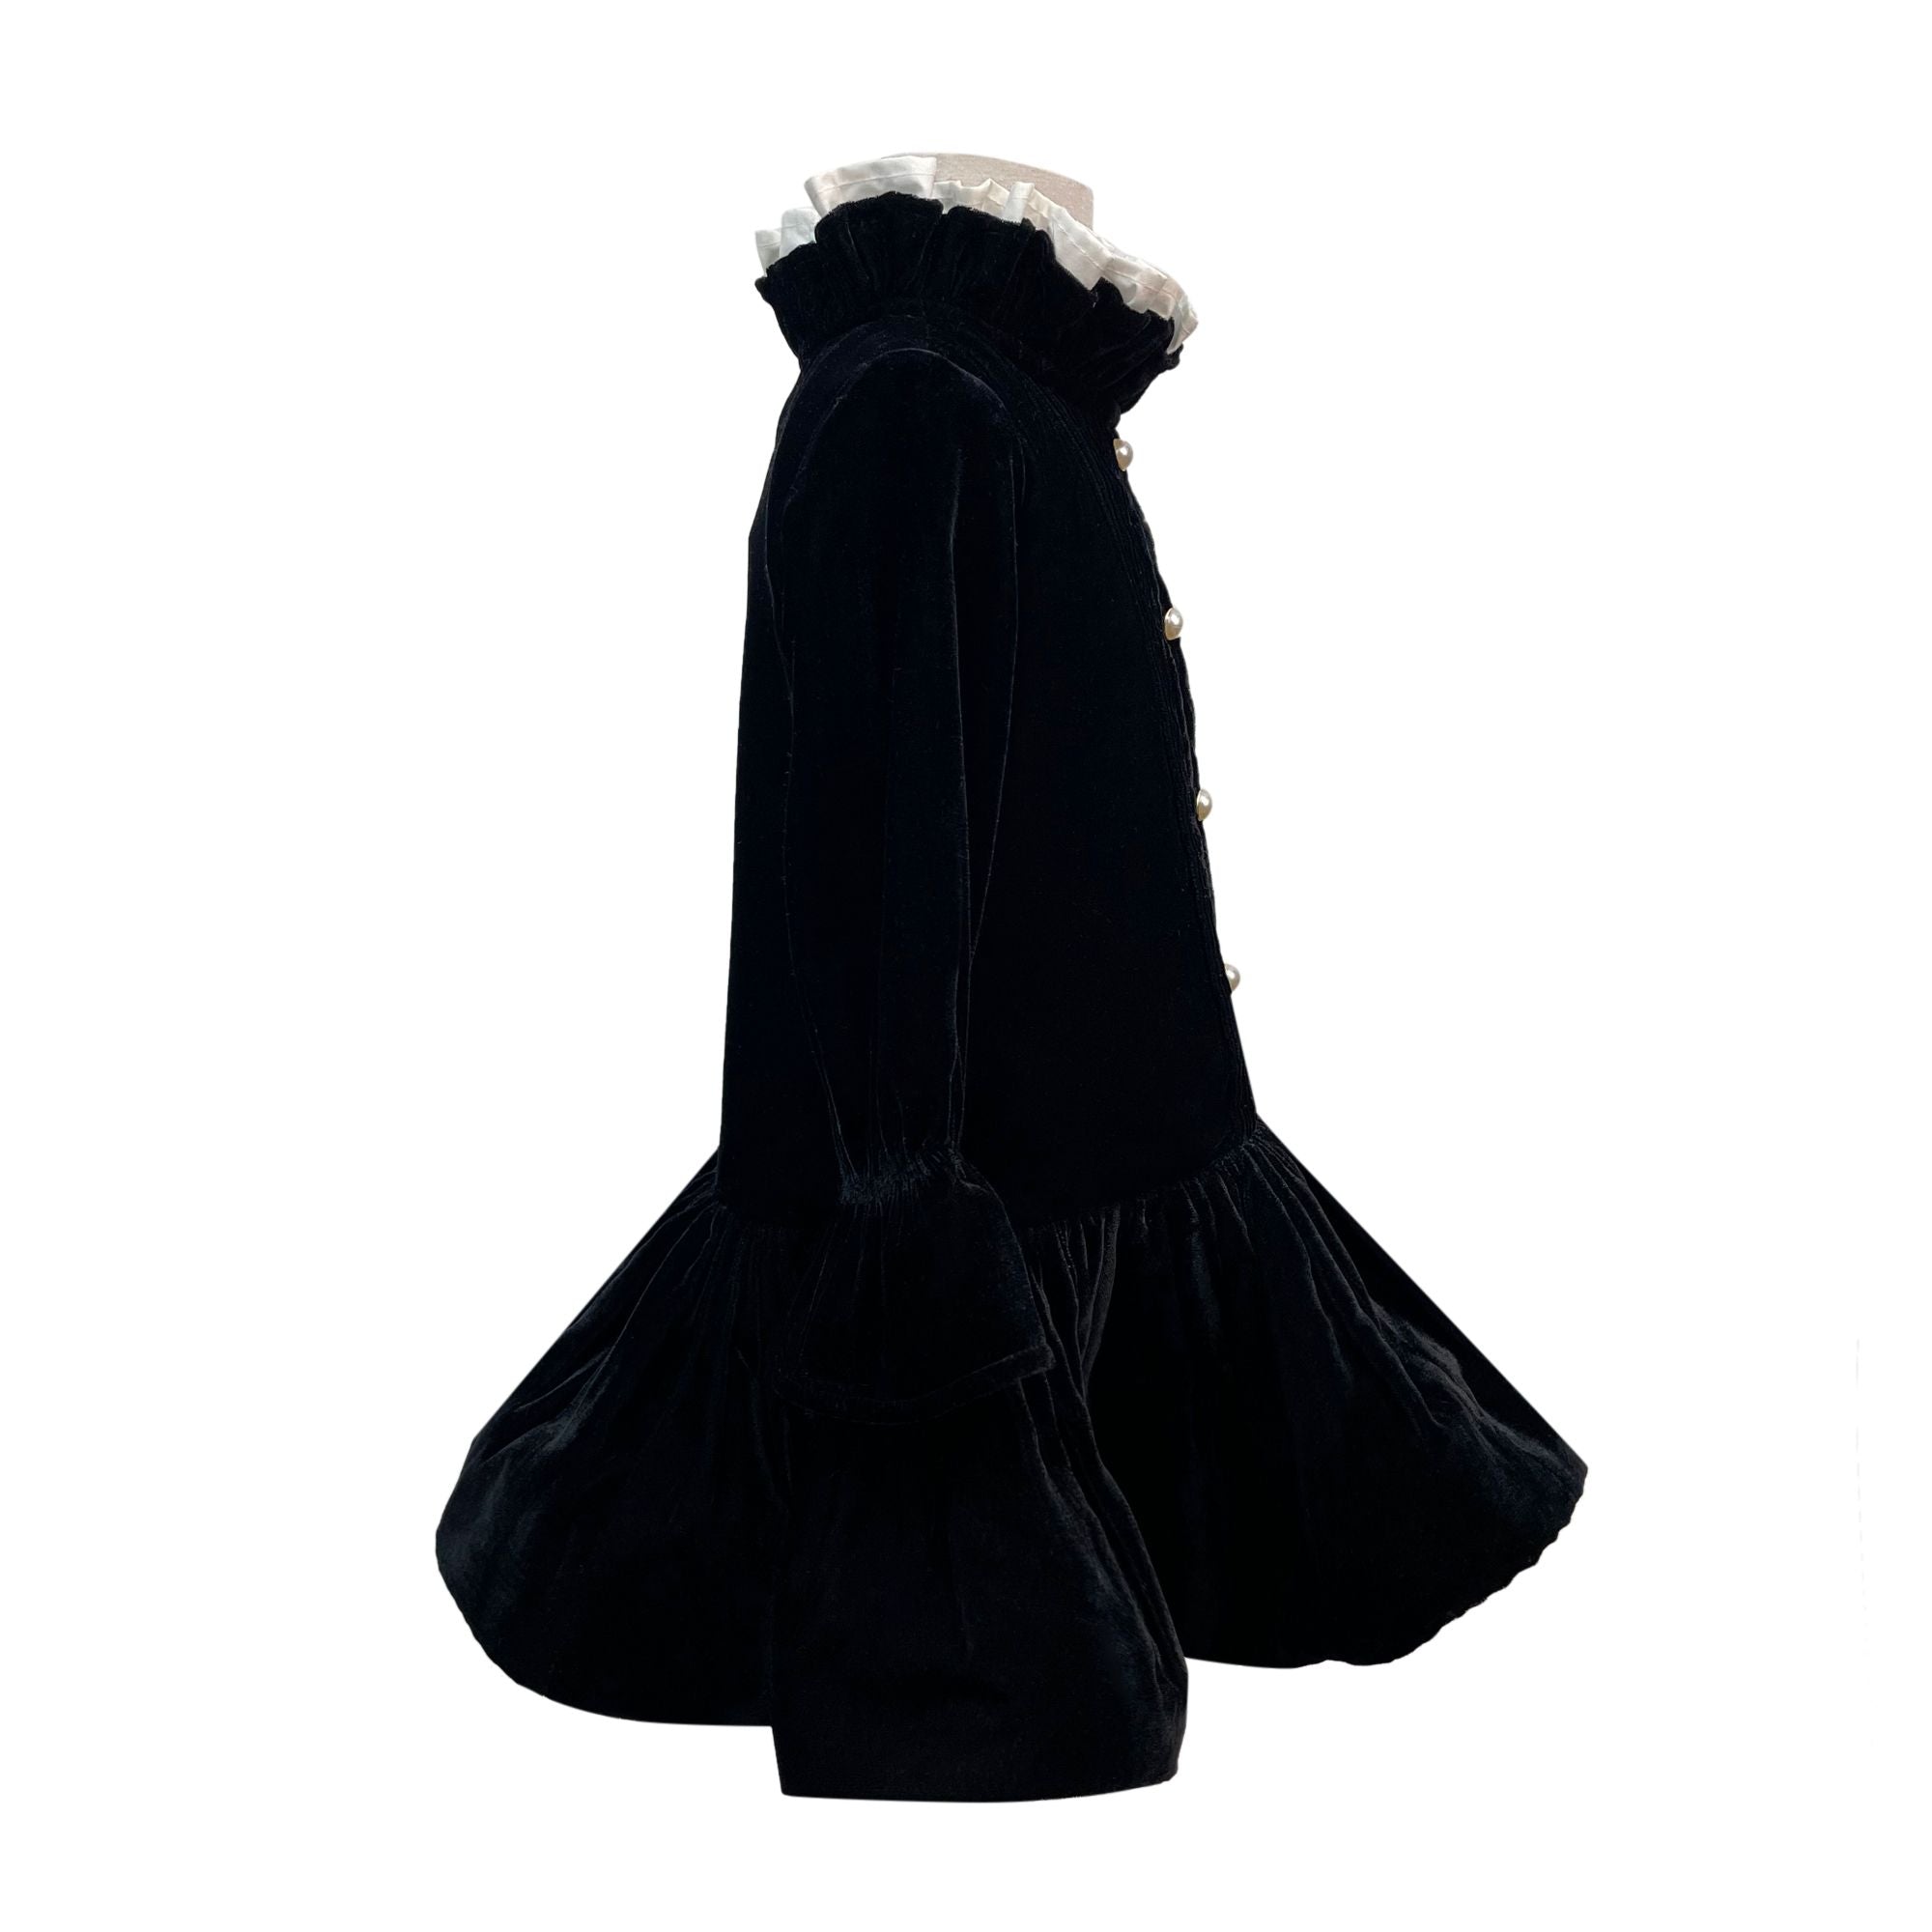 The Velvet Taylor Dress (Black)